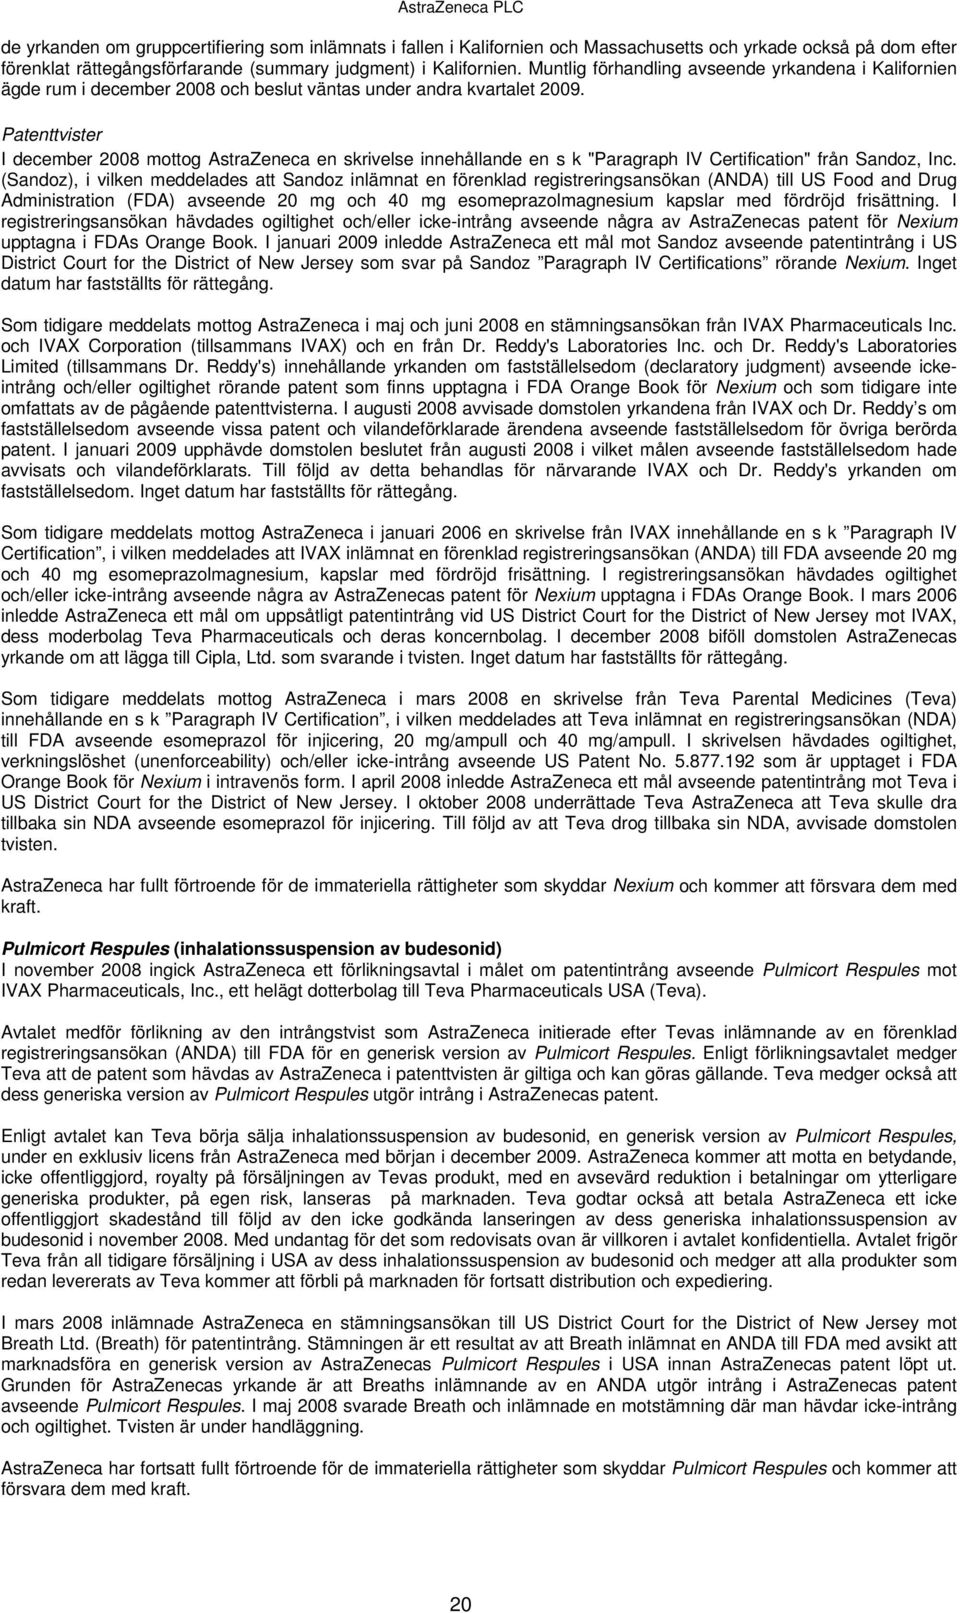 Patenttvister I december mottog AstraZeneca en skrivelse innehållande en s k "Paragraph IV Certification" från Sandoz, Inc.